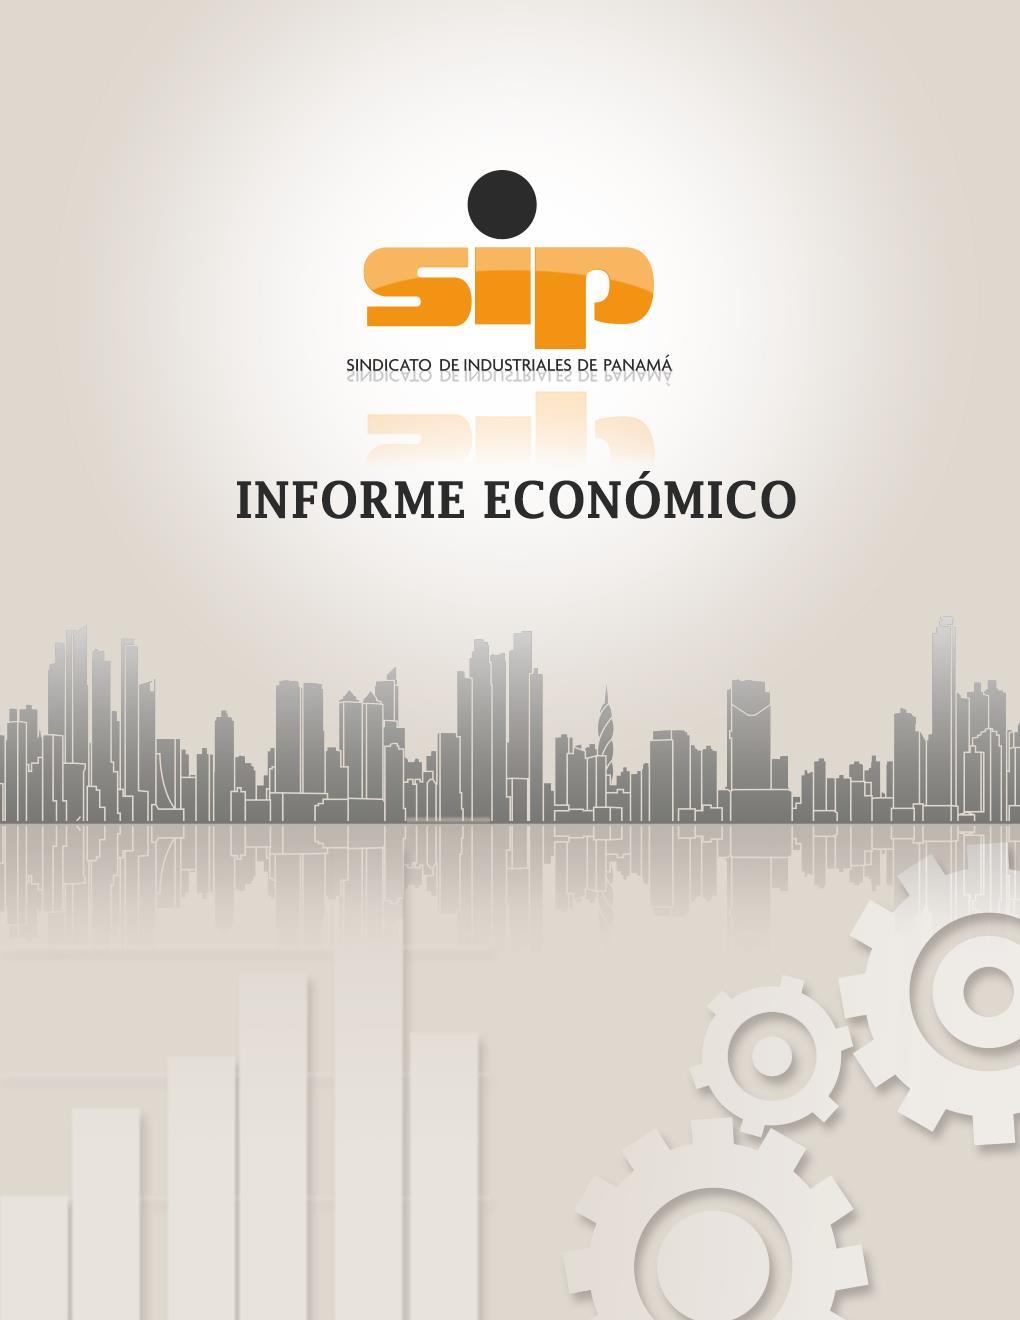 El crecimiento de la economía panameña y el sector industrial manufacturero al